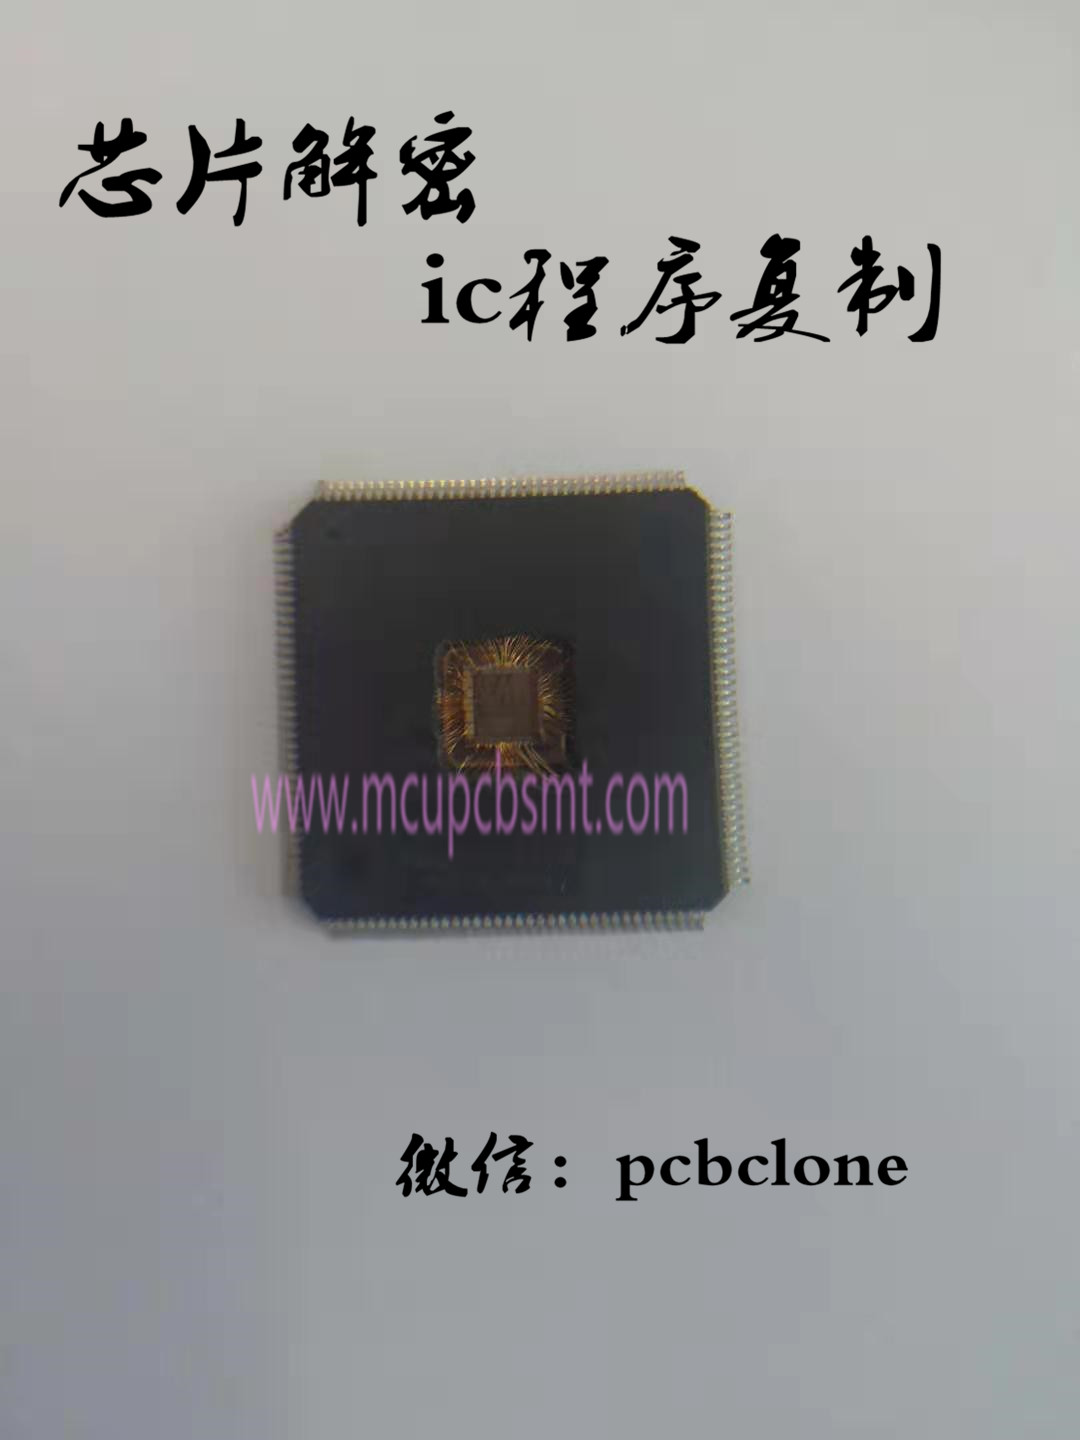 芯片解密MC9S12XA256，ic 程序克隆